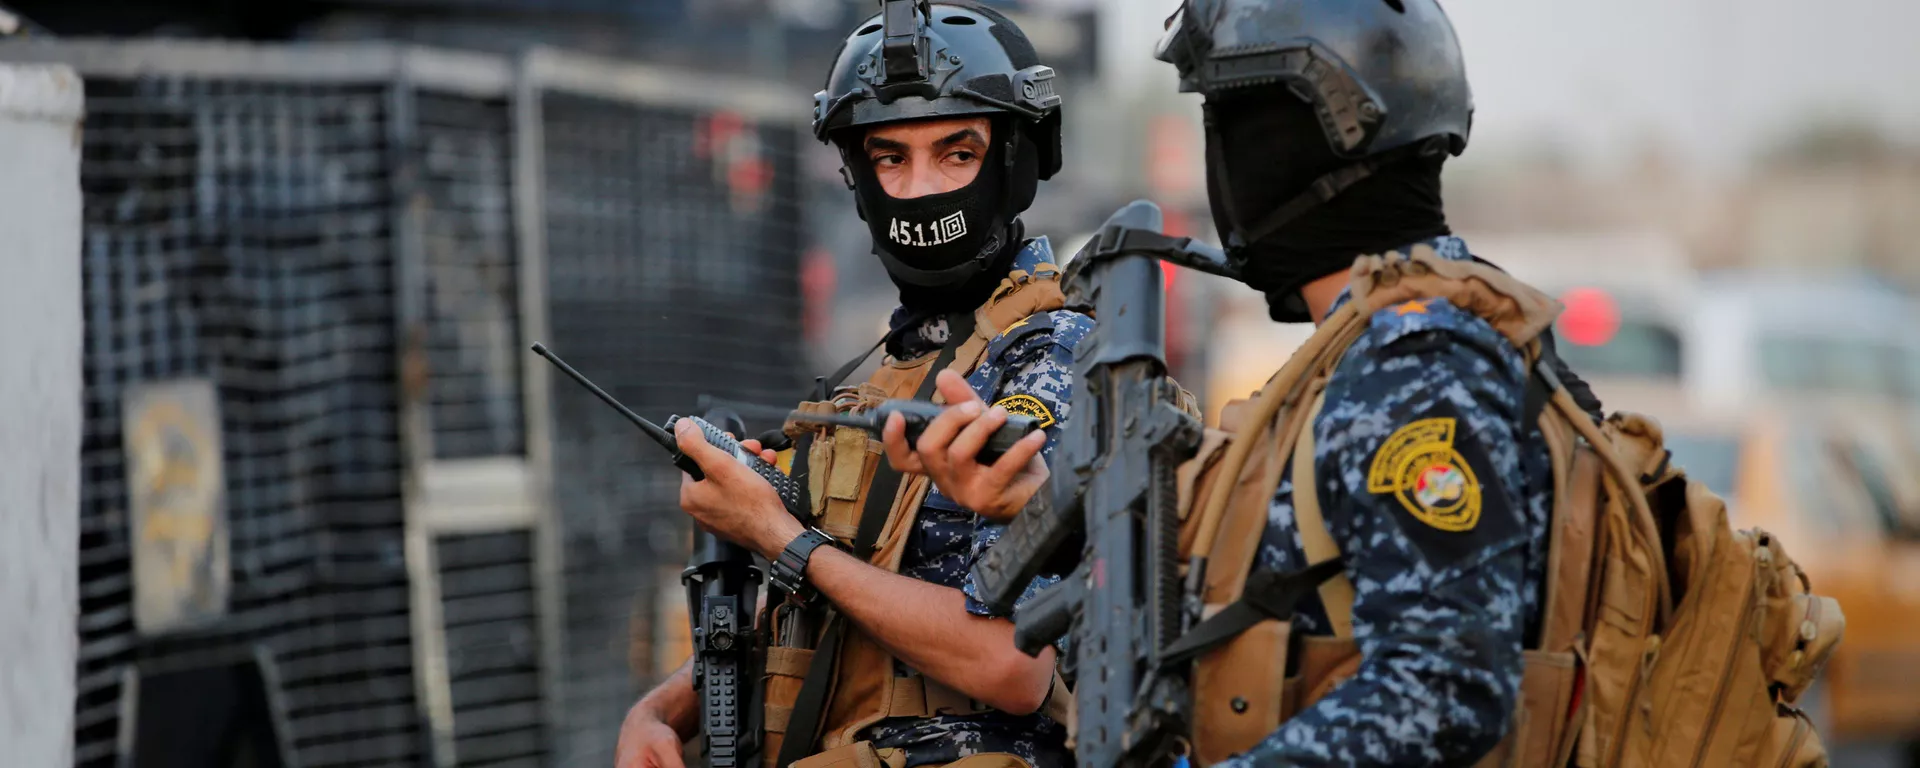 أفراد من الشرطة الفيدرالية العراقية يراقبون مركبات عسكرية في أحد شوارع بغداد، 7 أكتوبر/تشرين الأول 2019 - سبوتنيك عربي, 1920, 31.07.2021